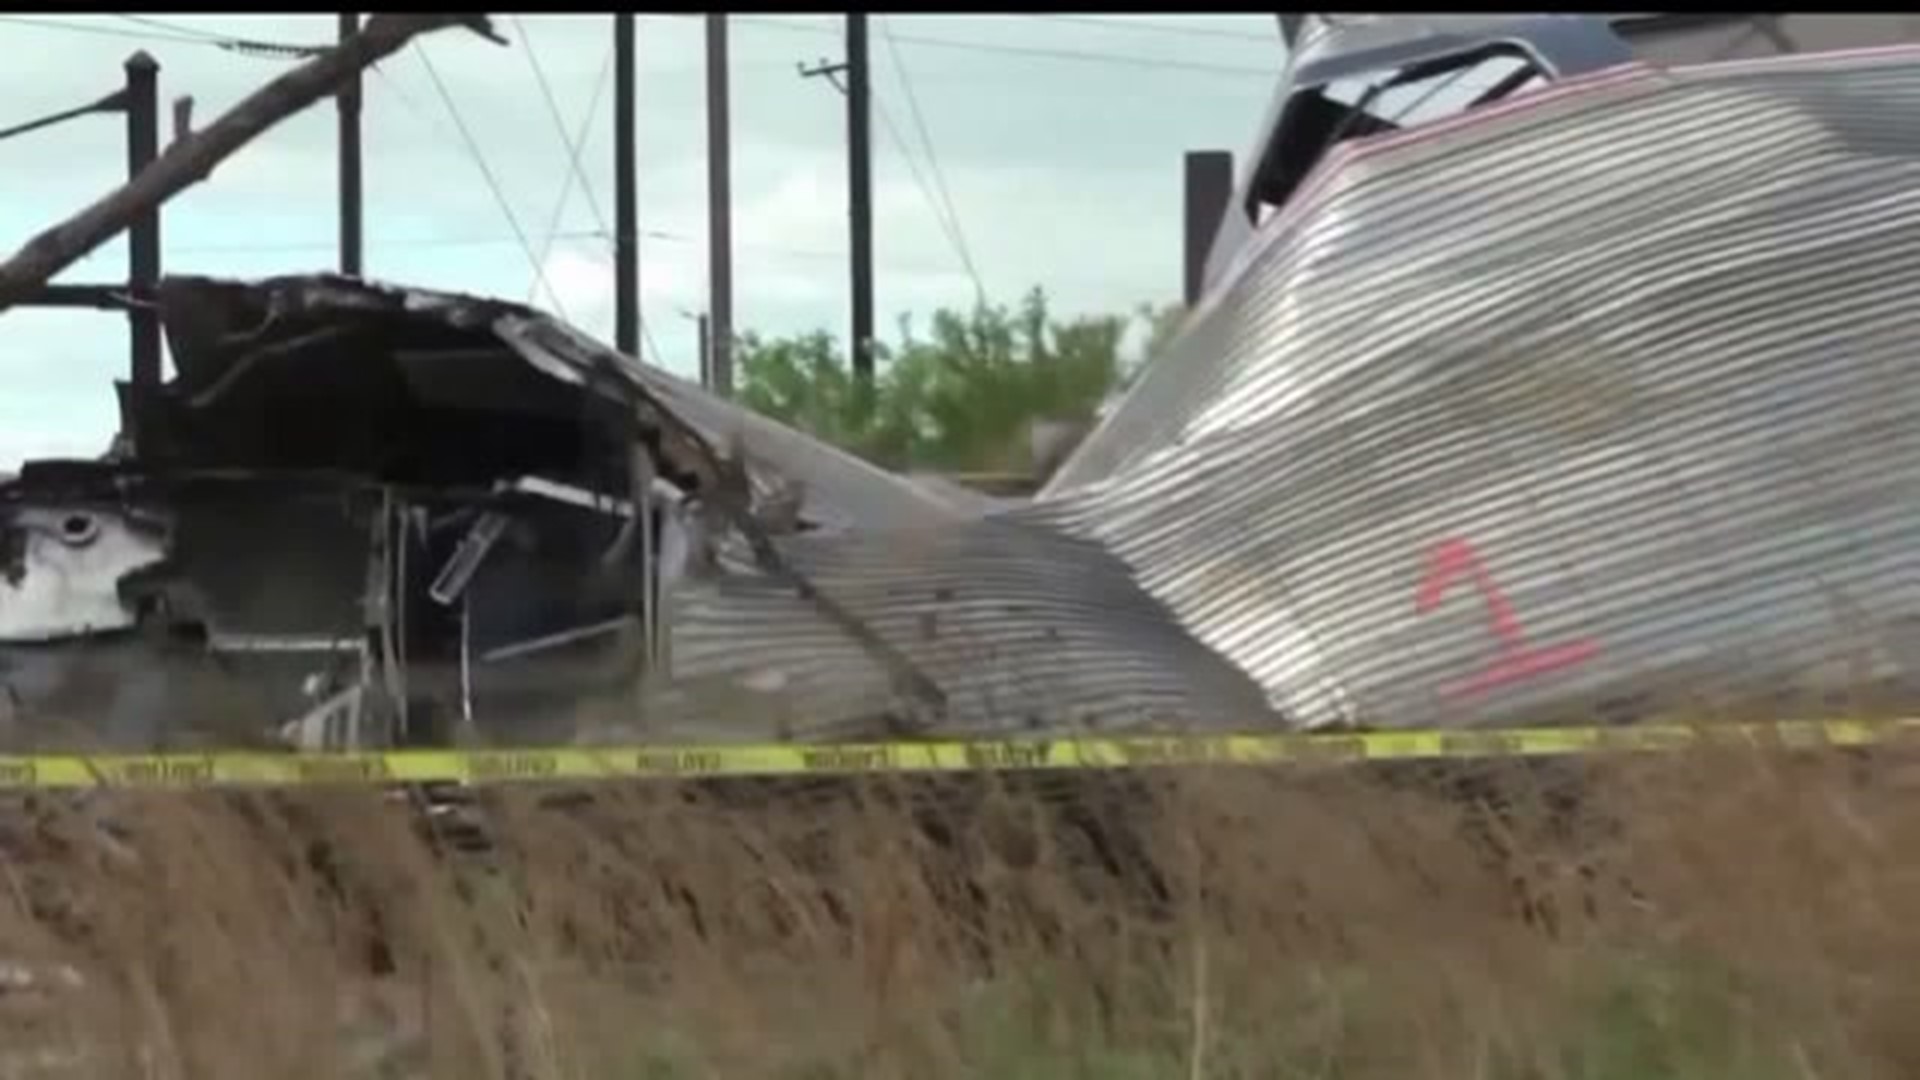 More on the train derailment investigation